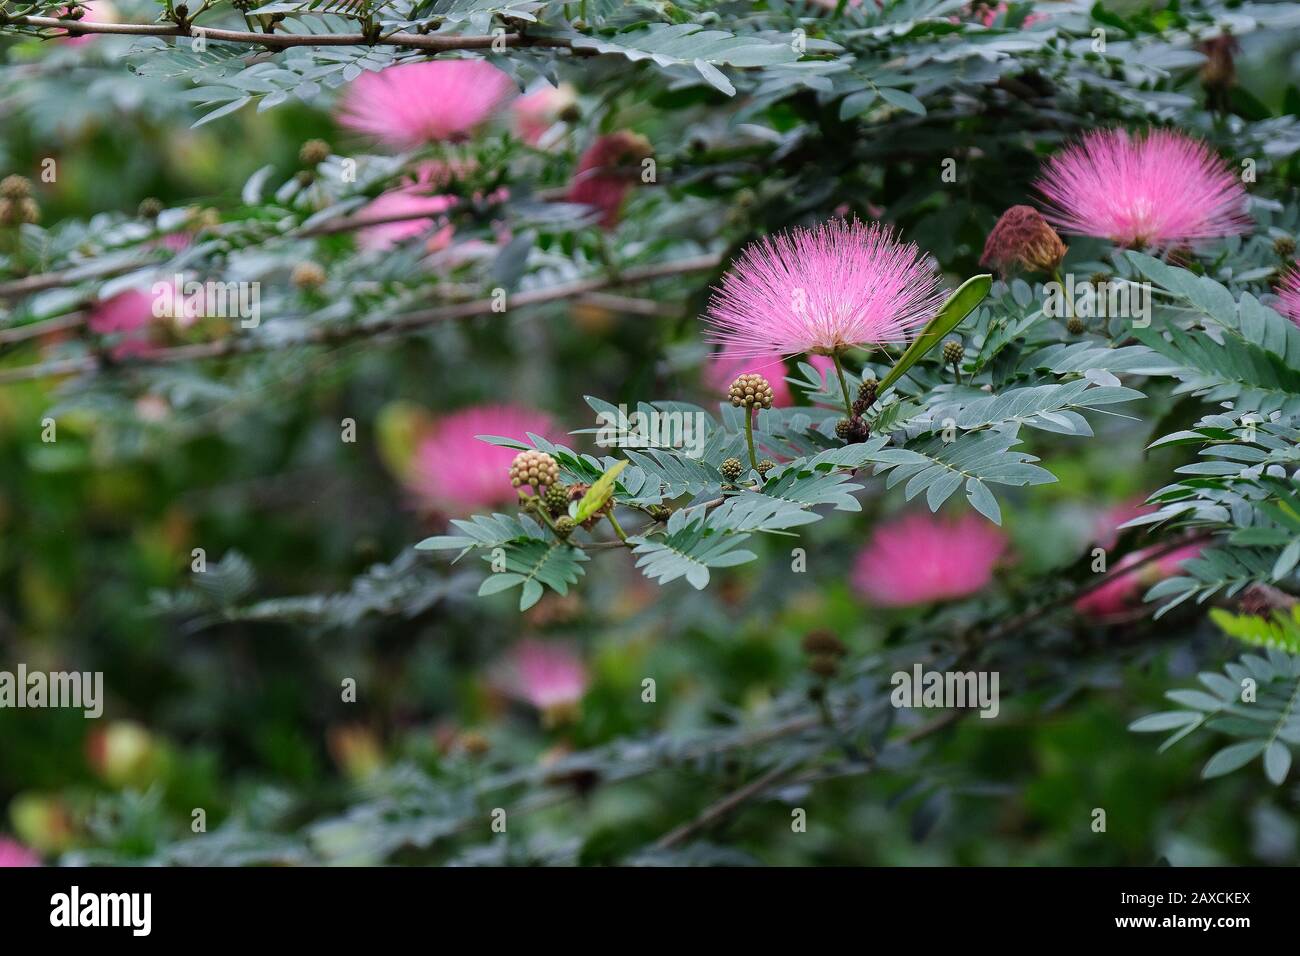 Flauschige rosafarbene Blumen verschwommen gegen eine Masse grüner Blätter Stockfoto